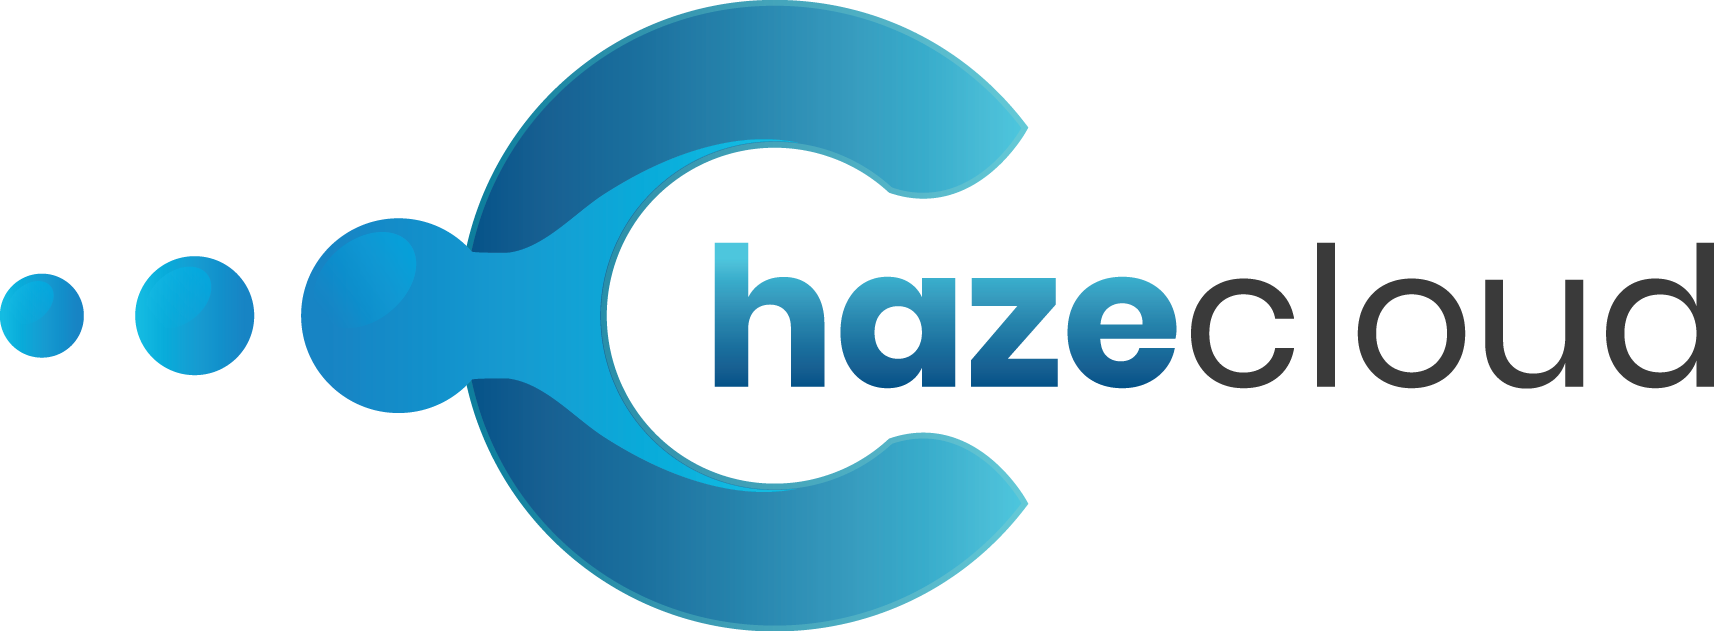 ChazeCloud Services Pvt Ltd